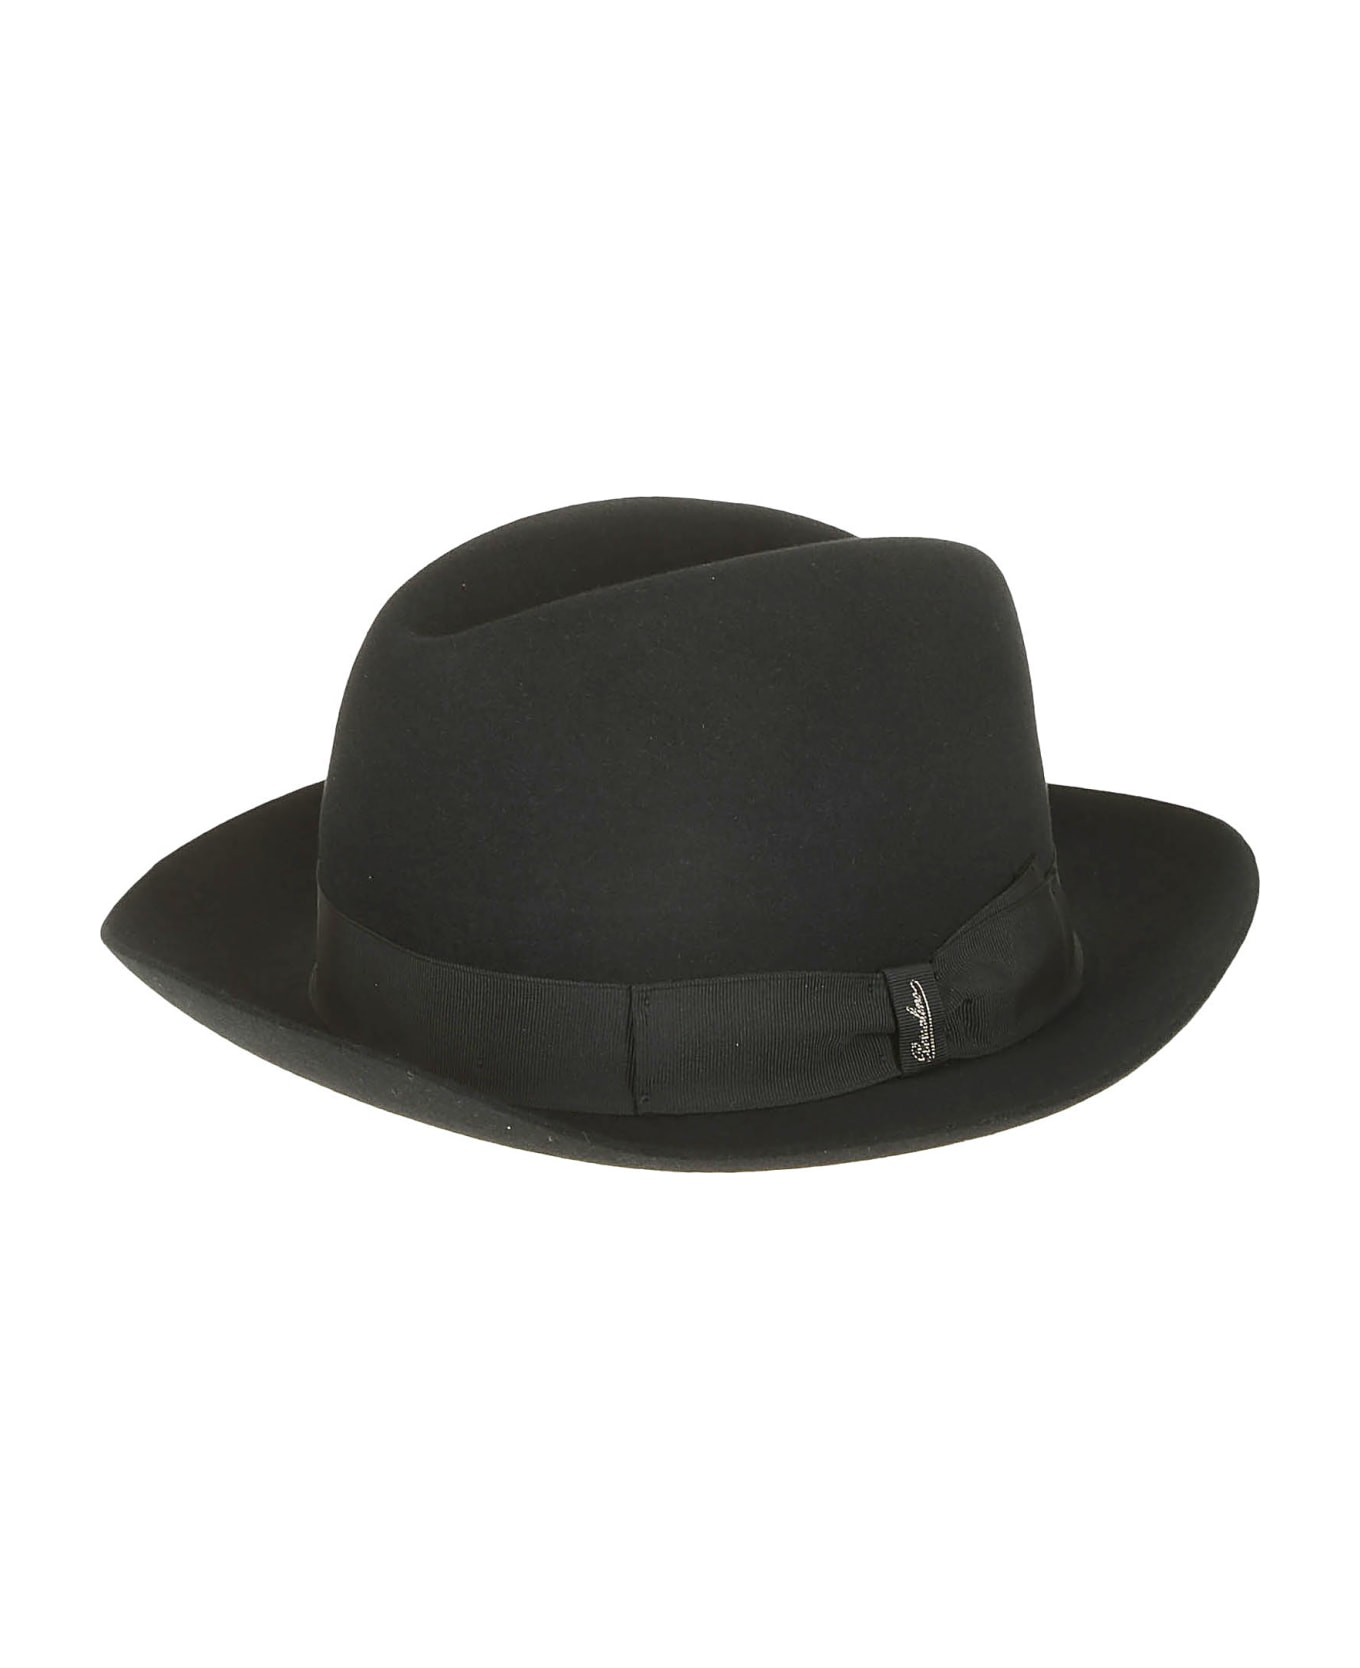 Borsalino Marengo Medium Brim - Black 帽子